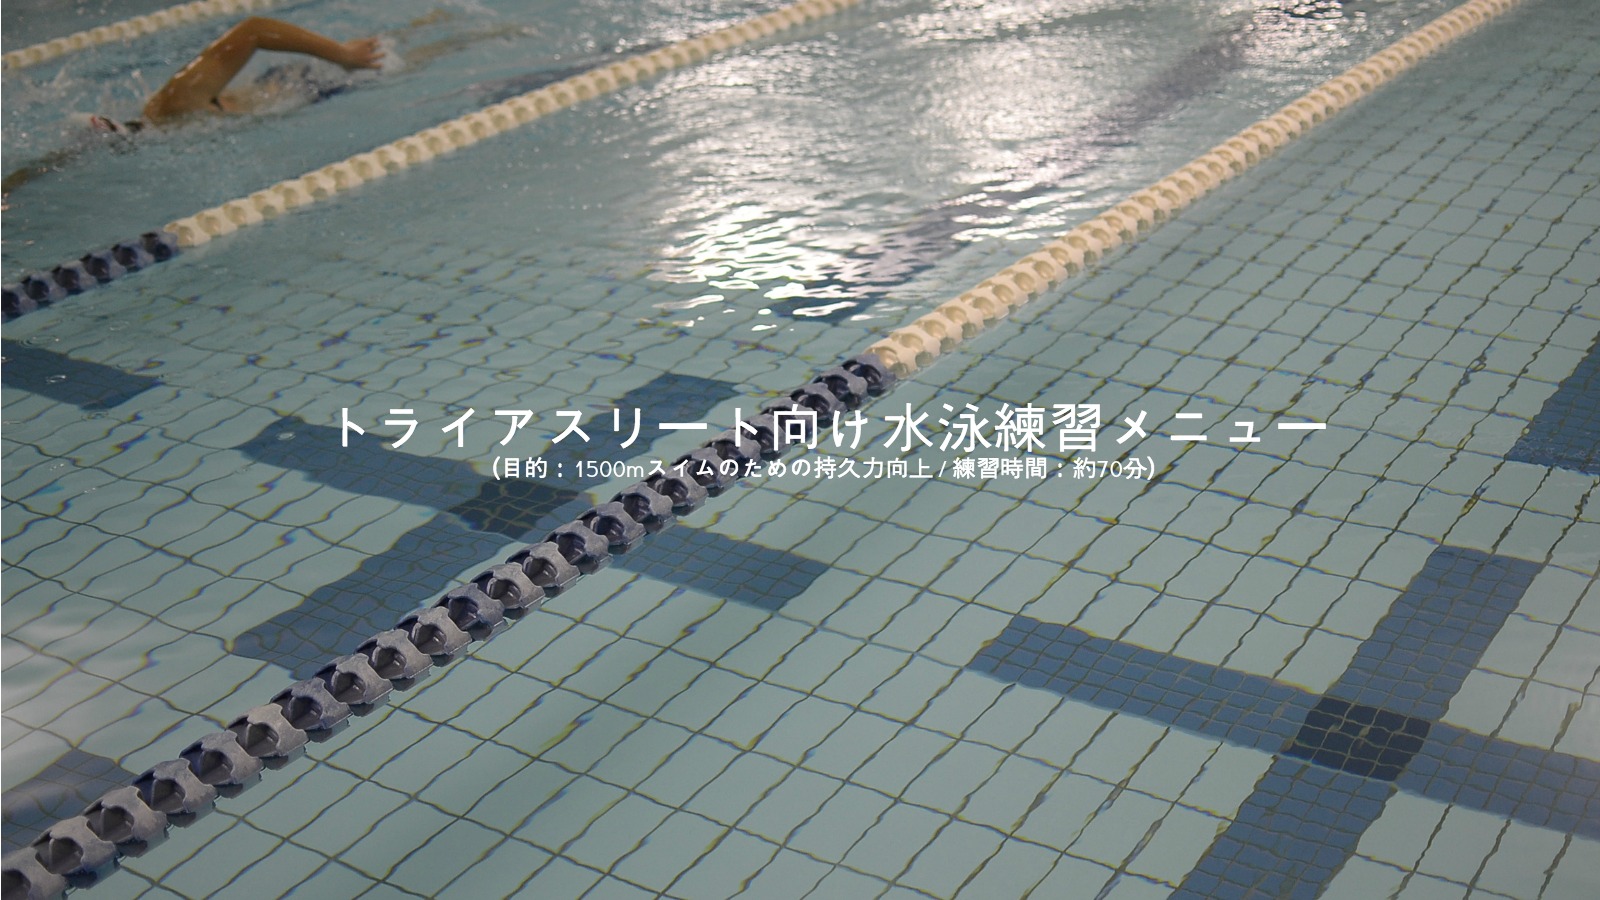 保存版 トライアスリート向け水泳練習メニュー 目的 1500mスイムのための持久力向上 練習時間 約70分 かとすい トライアスロンスイム オーシャンスイム